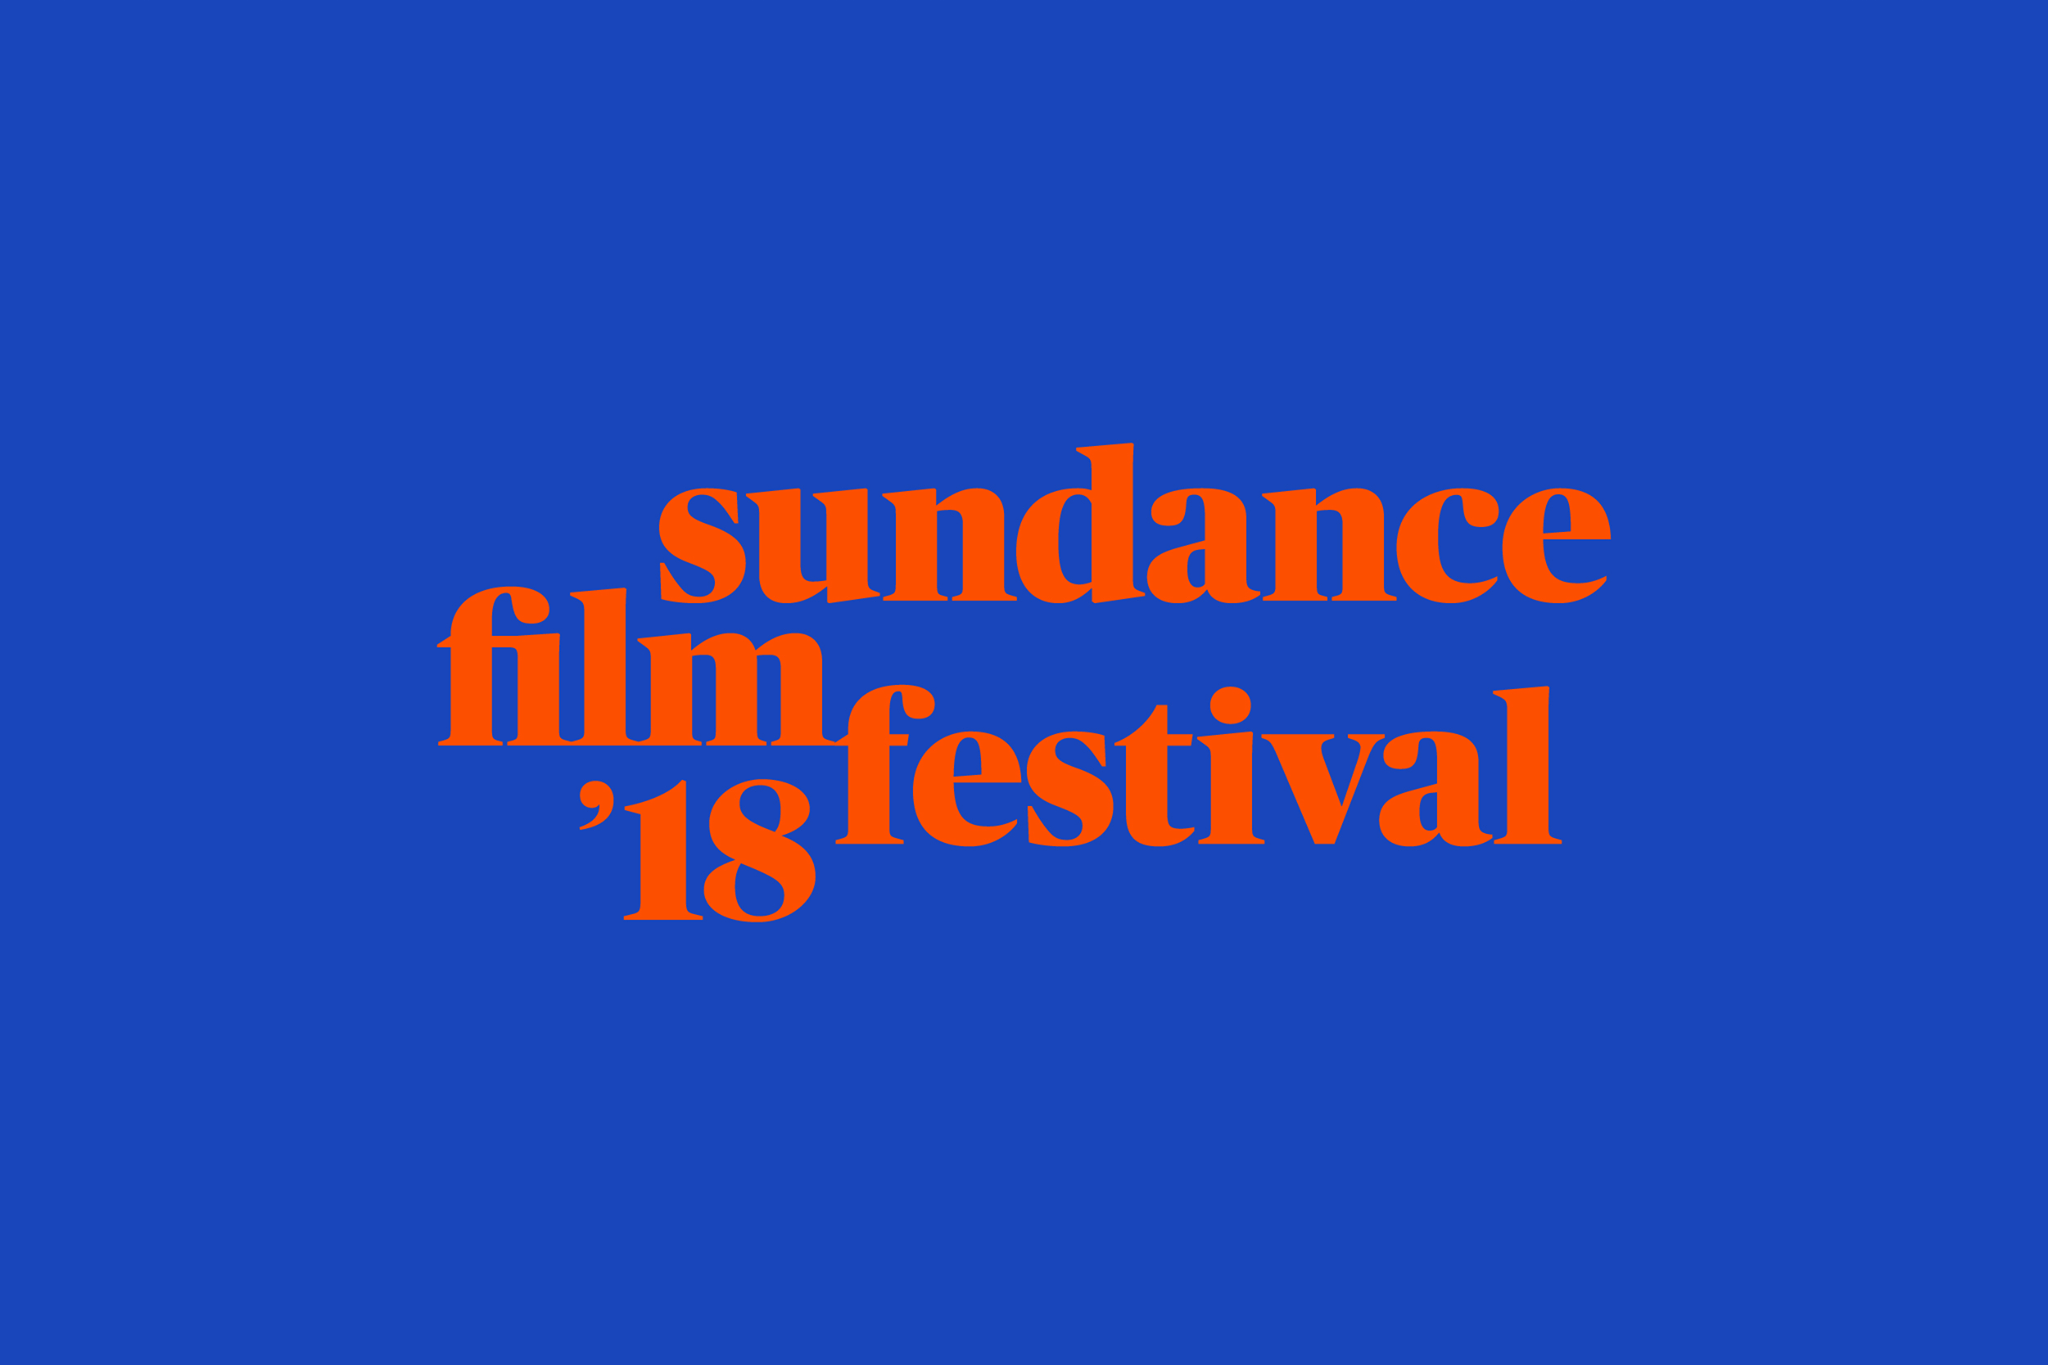 Sundance Film Festival 2018: Composer Roster